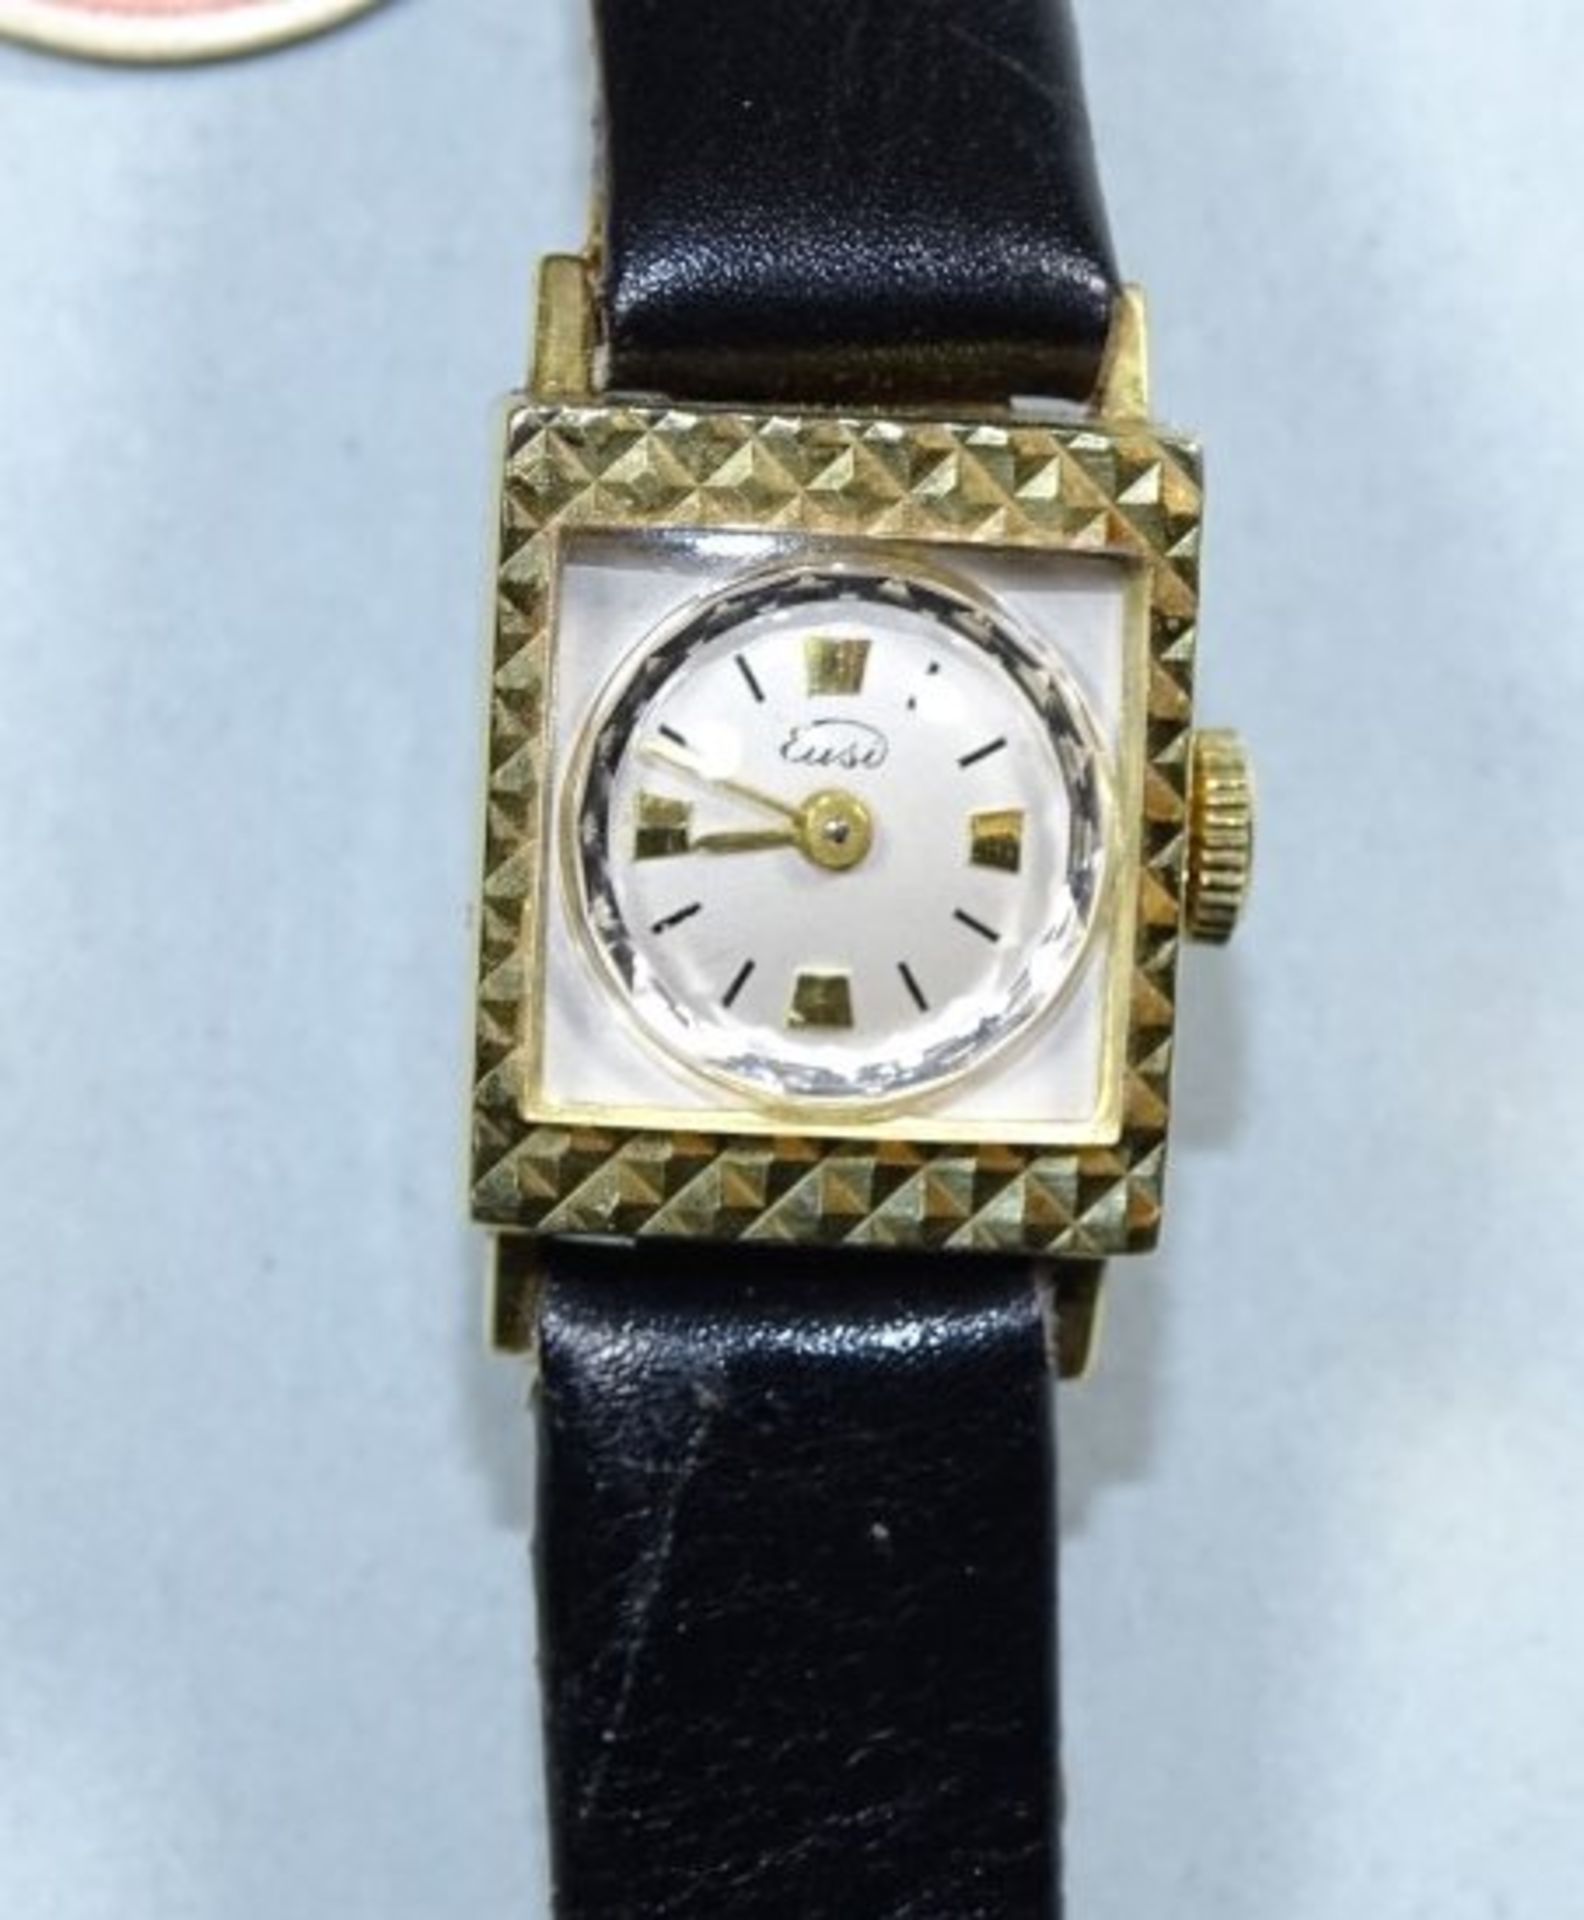 Armbanduhr, ''Eusi'', goldplated, ungetragen, Lagerspuren, Funktion nicht geprüf - Bild 3 aus 5